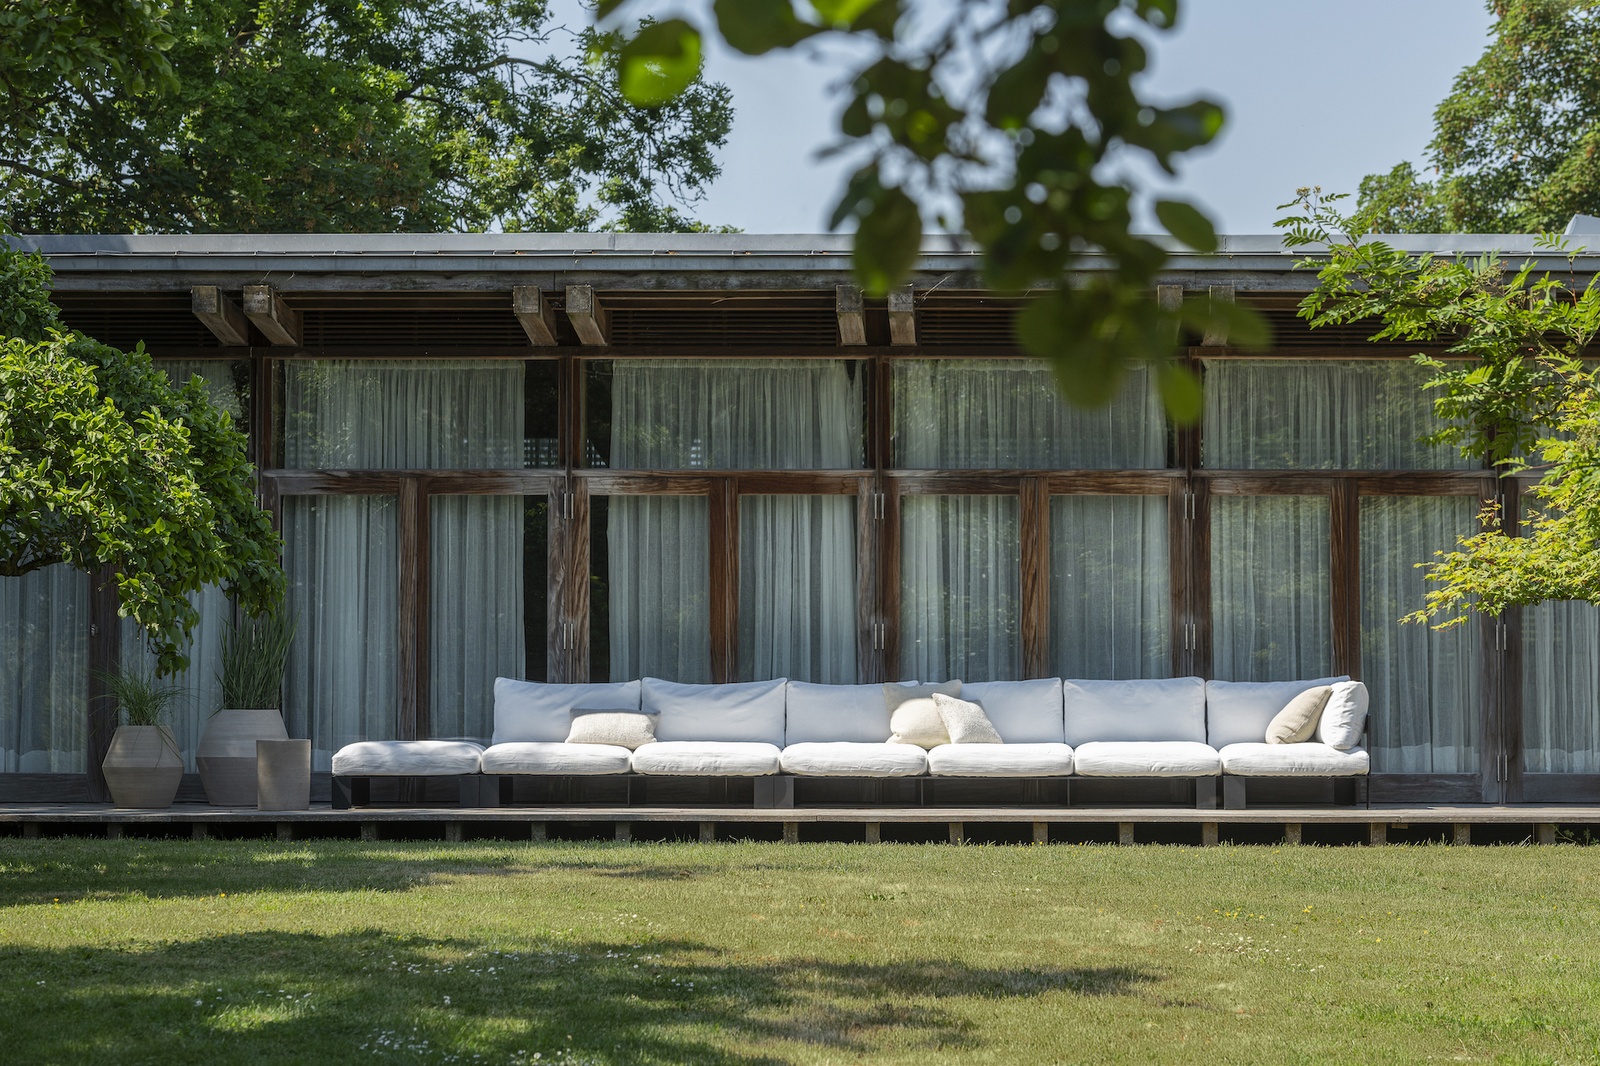 Glaspavillion mit Holzterrasse, auf der ein meterlanges Outdoor Loungesofa mit weißen bezügen steht.